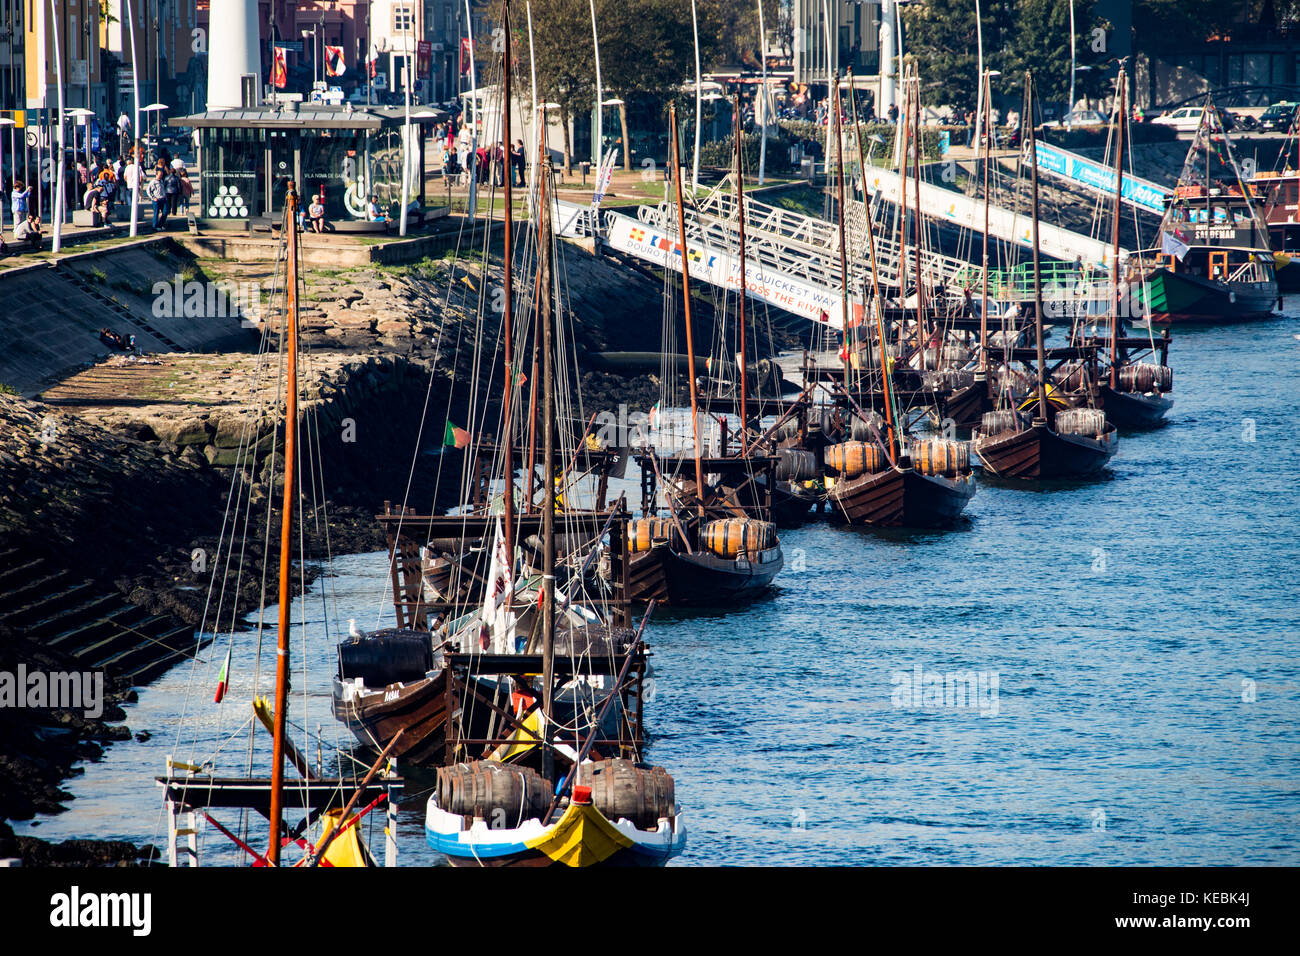 Rabelo historique rivière port des bateaux sur le fleuve Douro avec rabelo, Porto, Portugal Banque D'Images